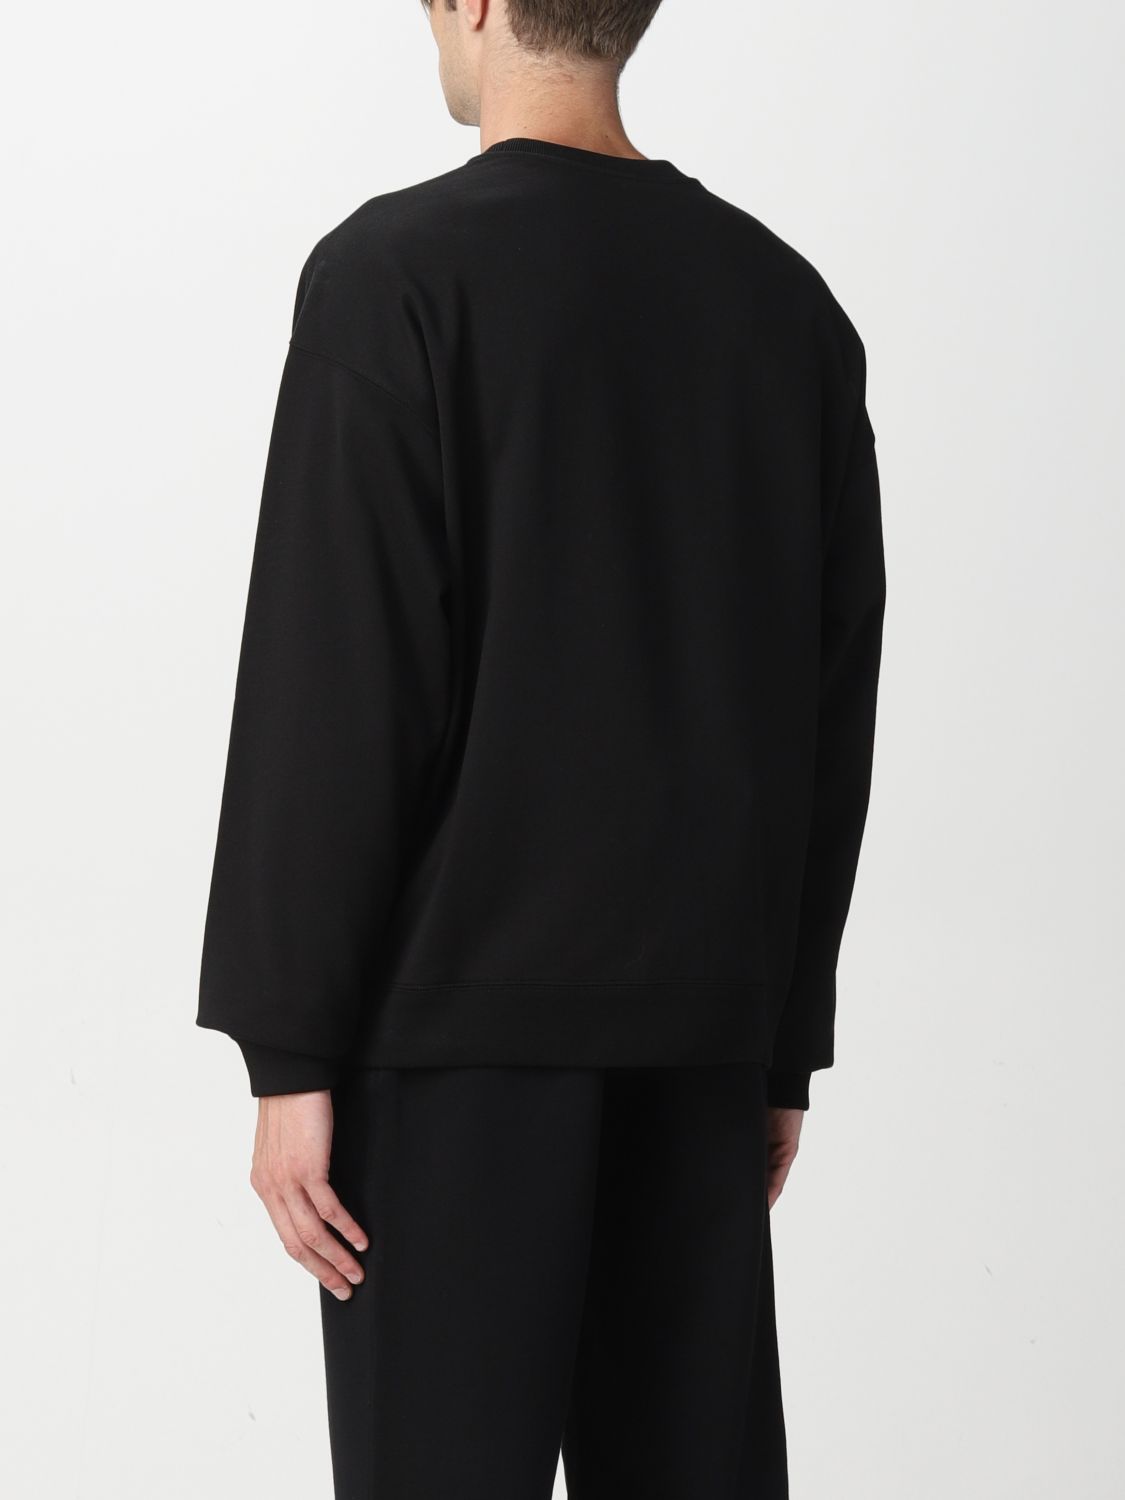 Sweatshirt Versace: Sweatshirt Versace homme noir 2